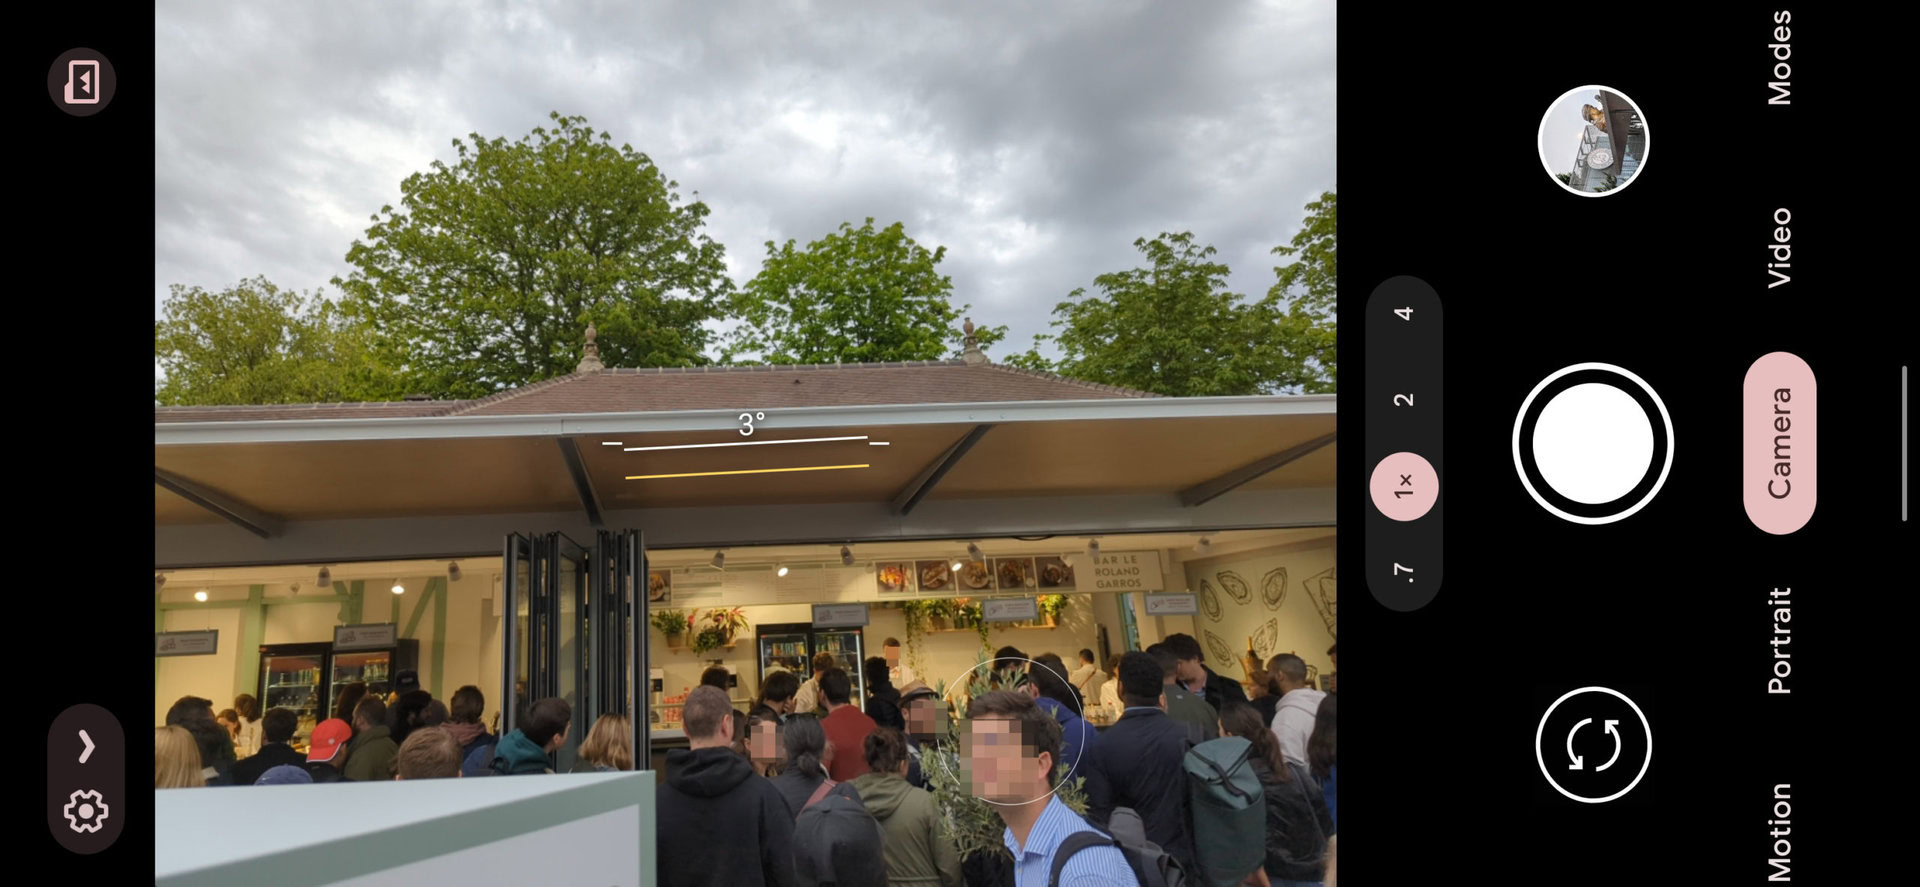 Schermata della fotocamera Google Pixel 6 Pro 1x che mostra un negozio di alimentari con una lunga coda